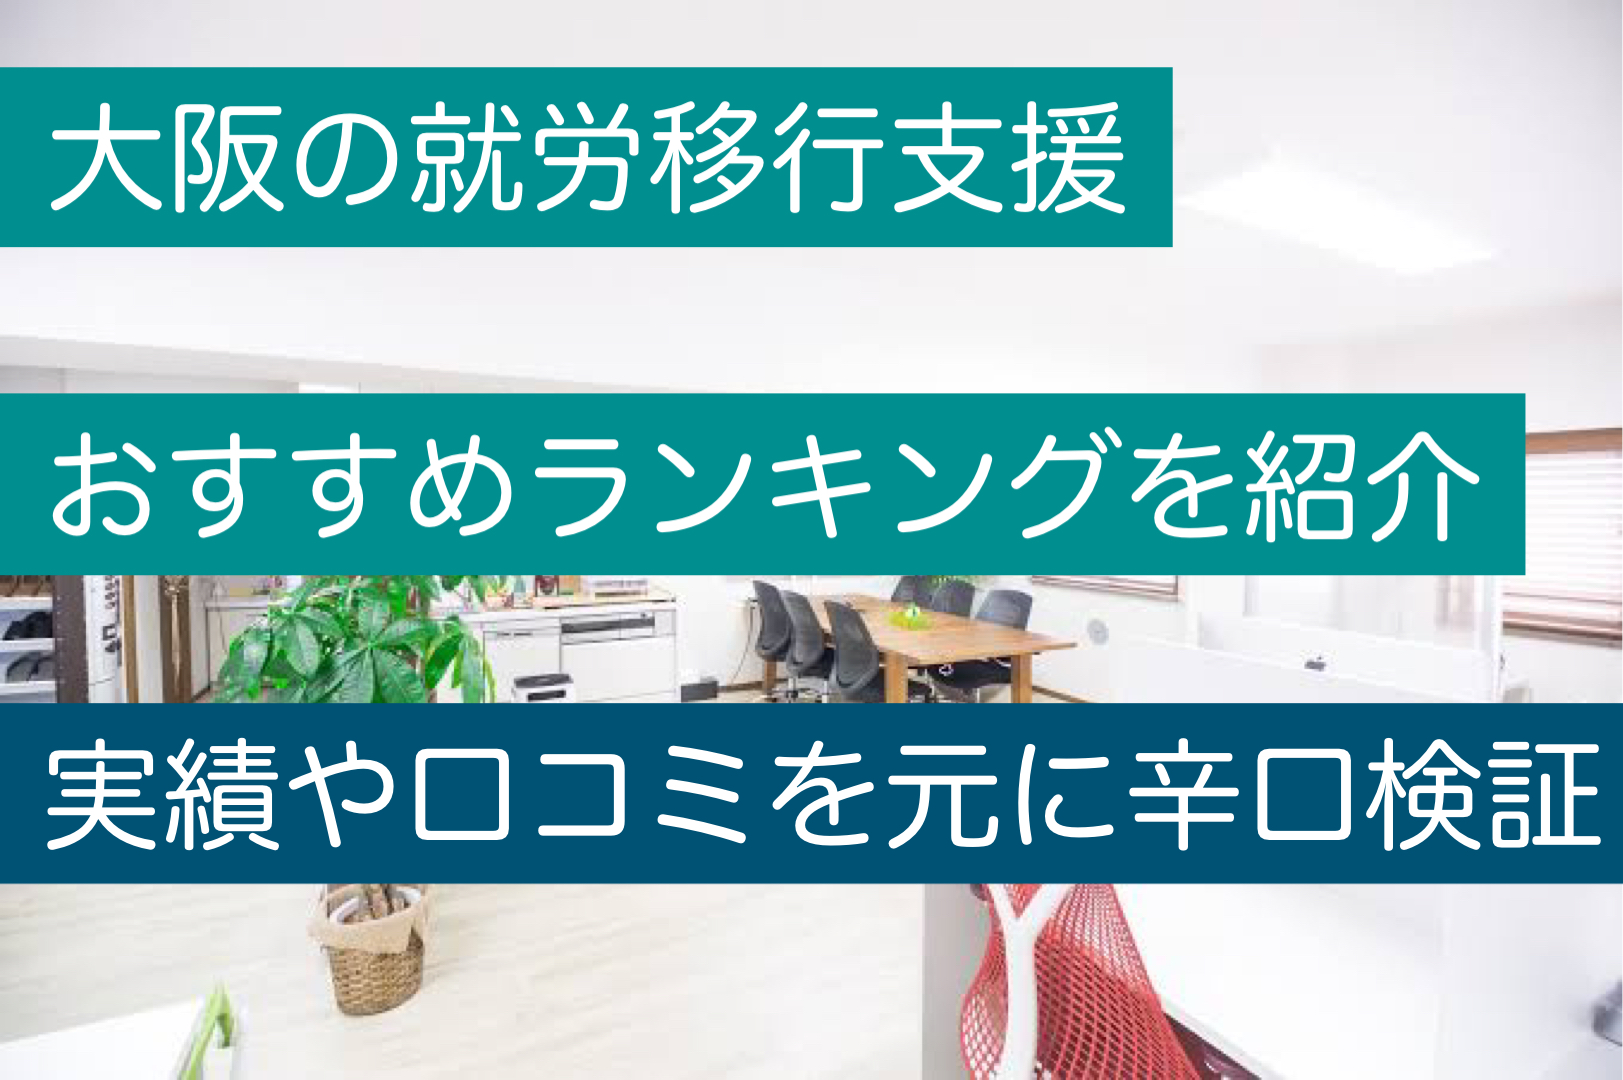 大阪の就労移行支援おすすめランキング実績や口コミを元に辛口検証